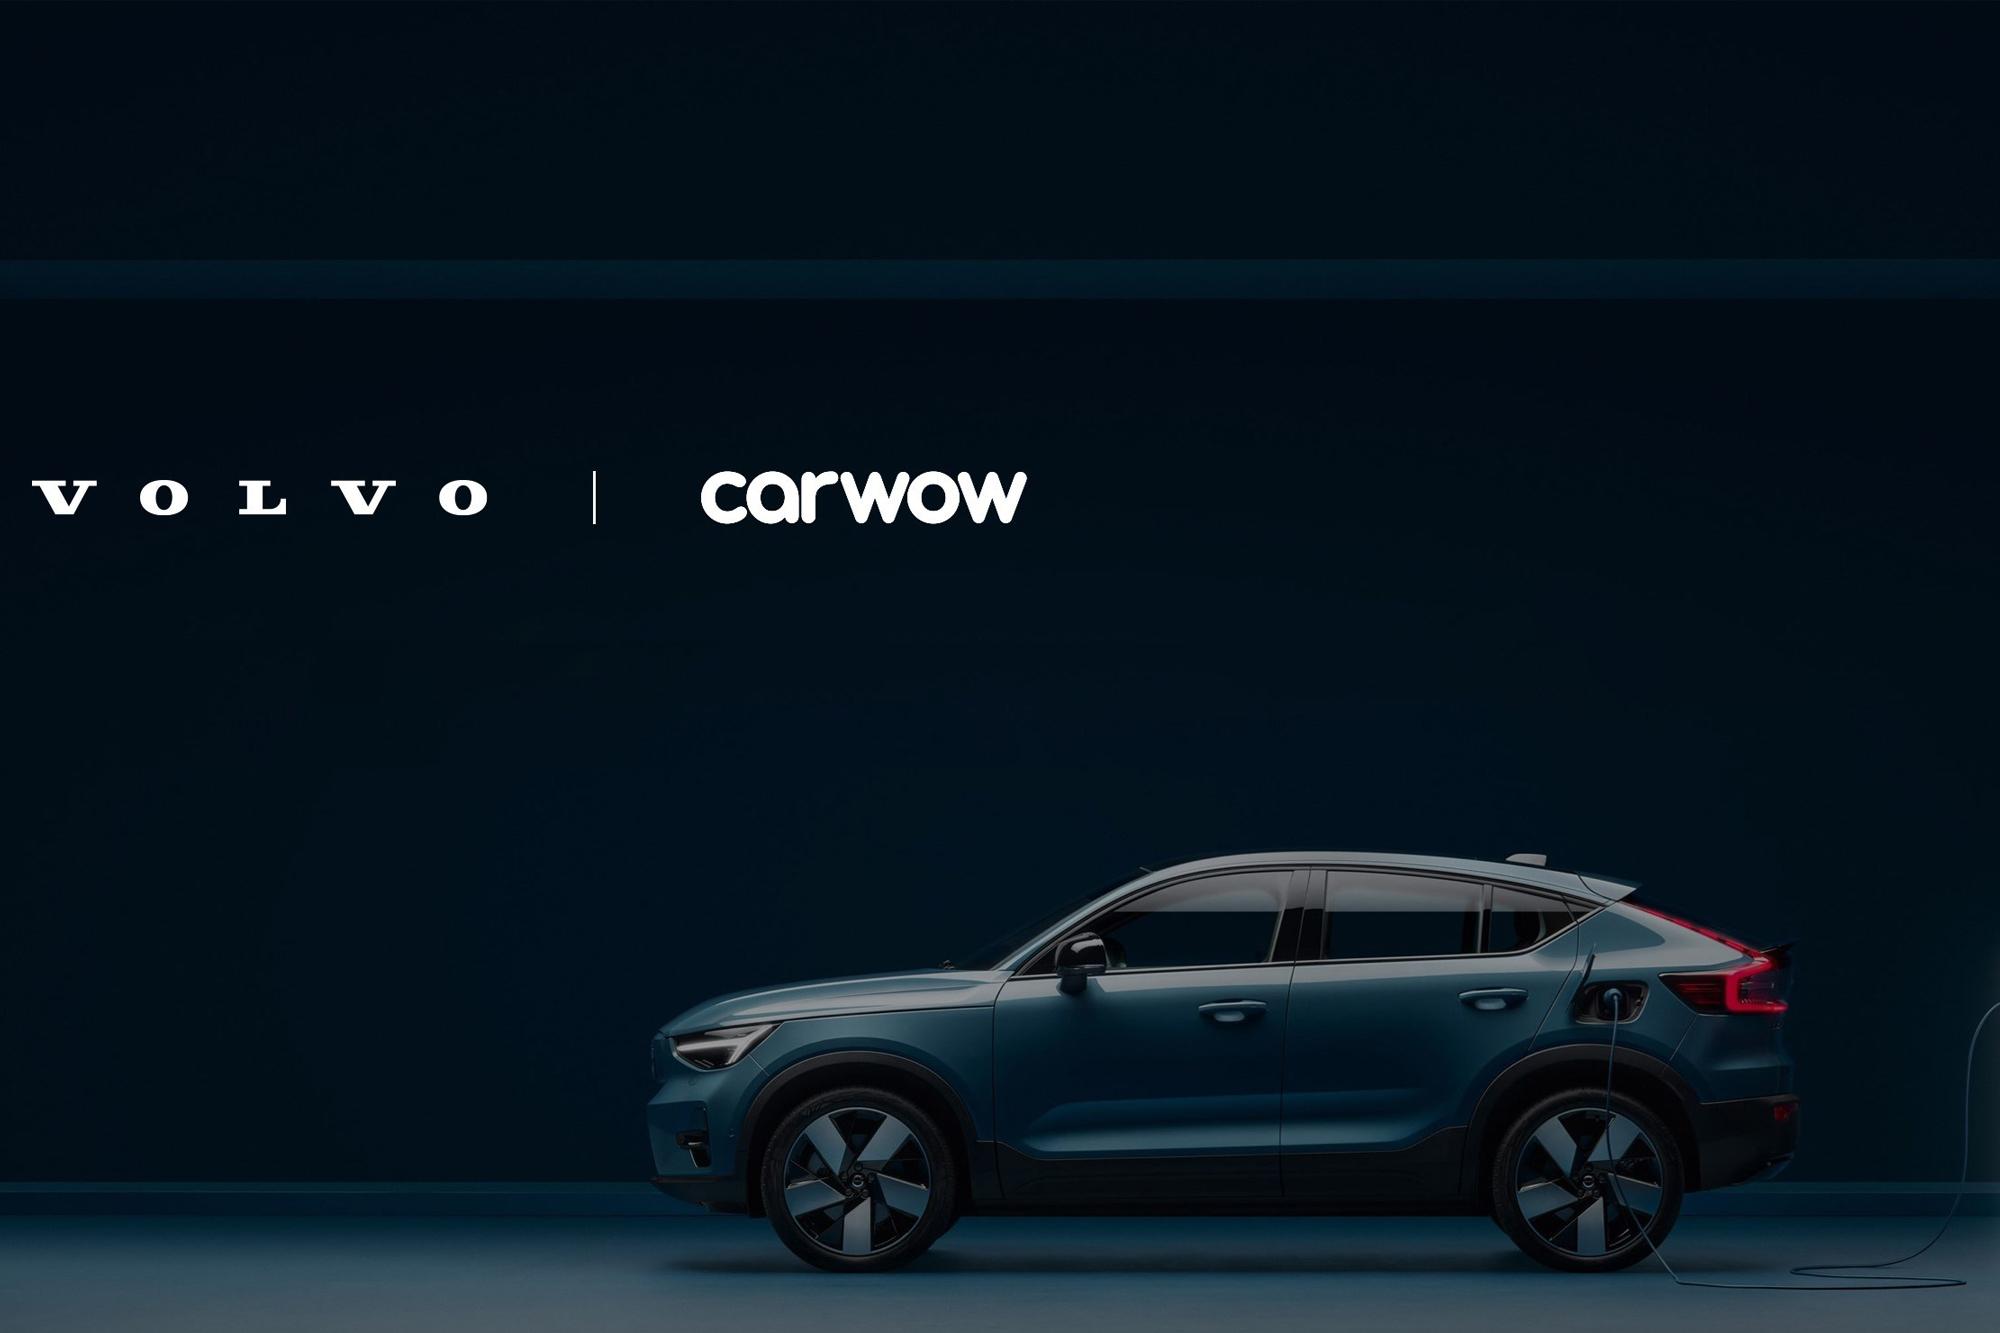 Η Volvo στο carwow